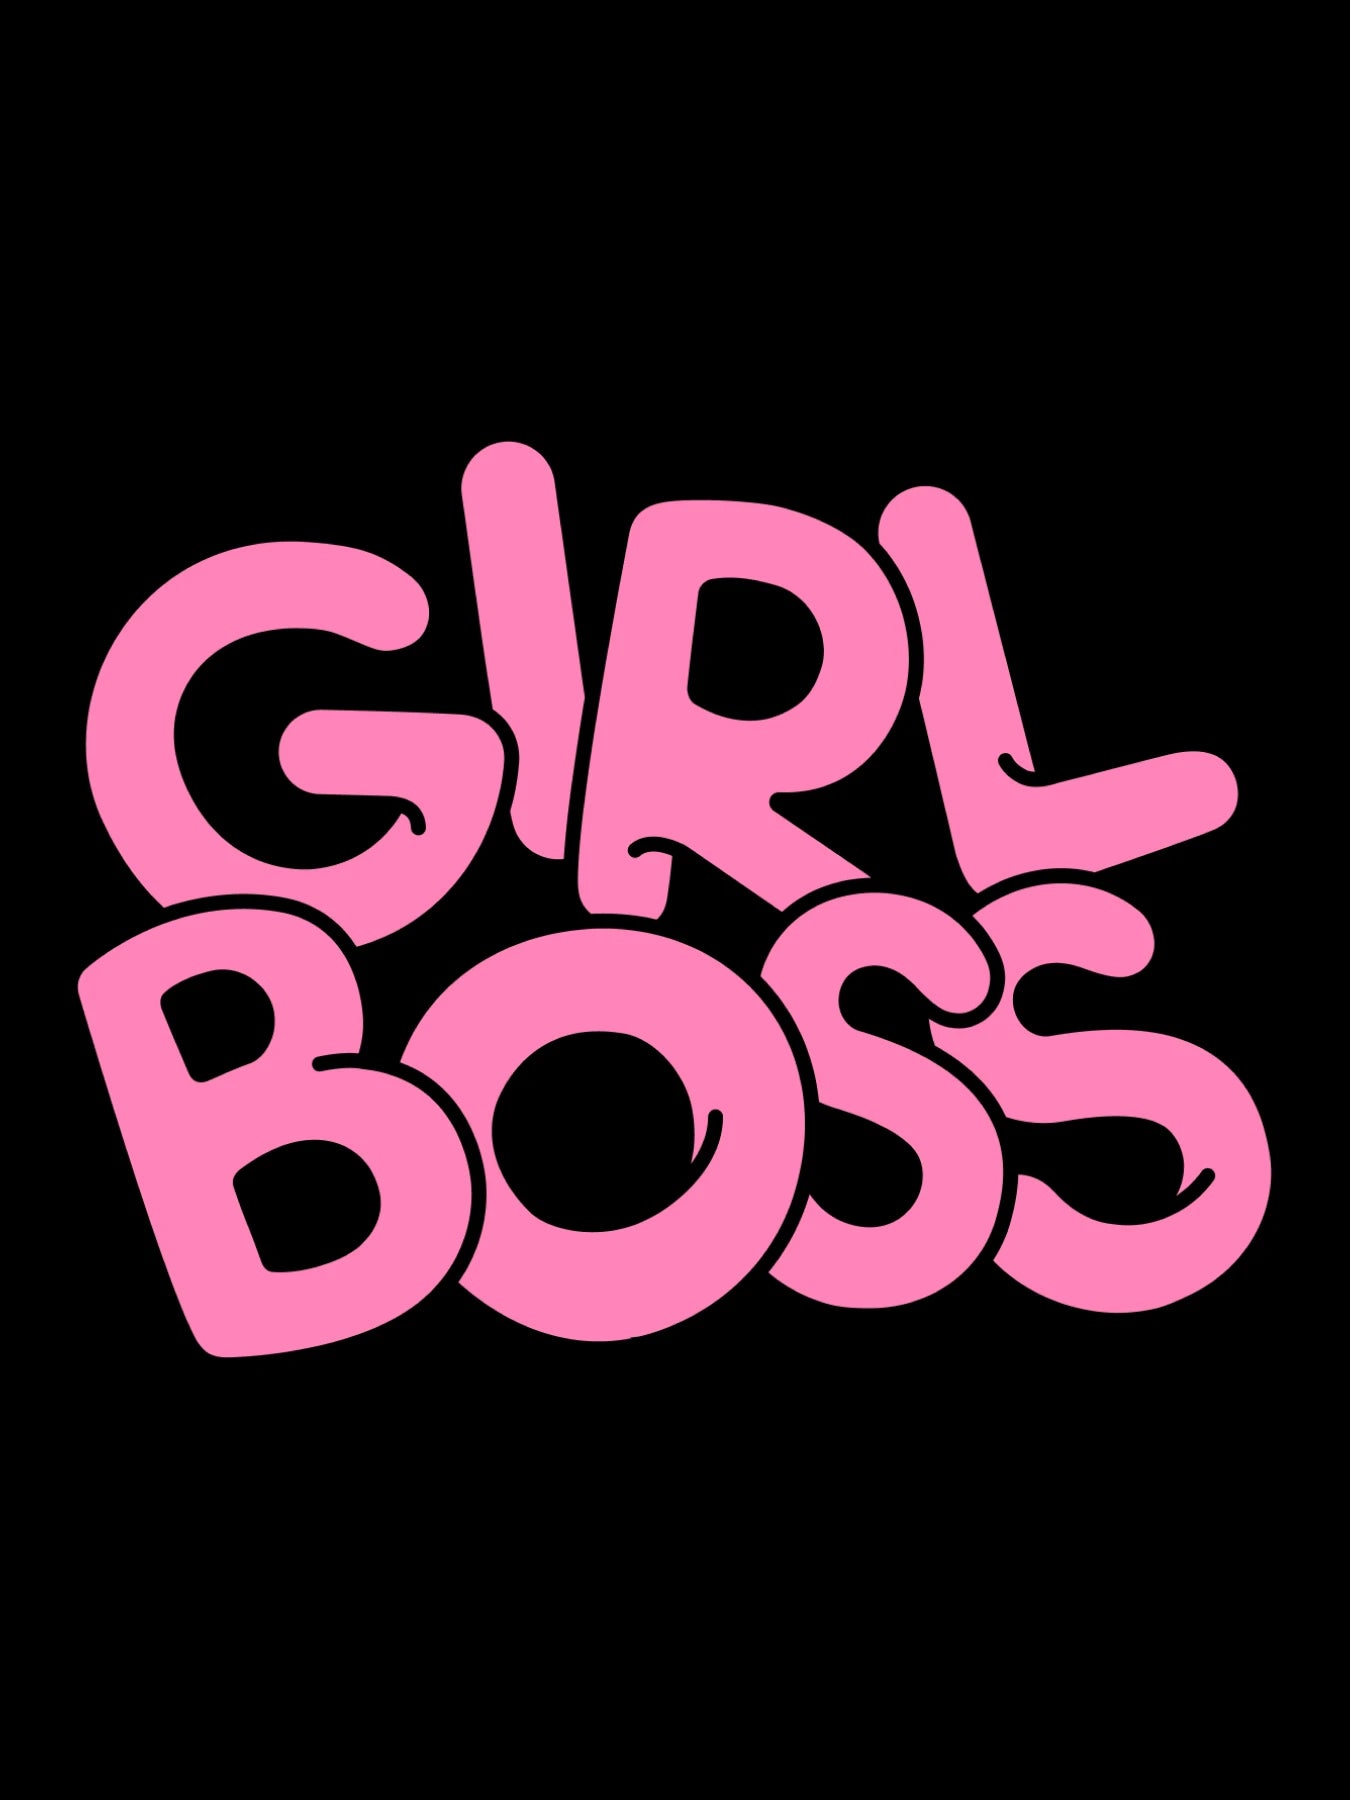 Girl Boss - T-Shirt